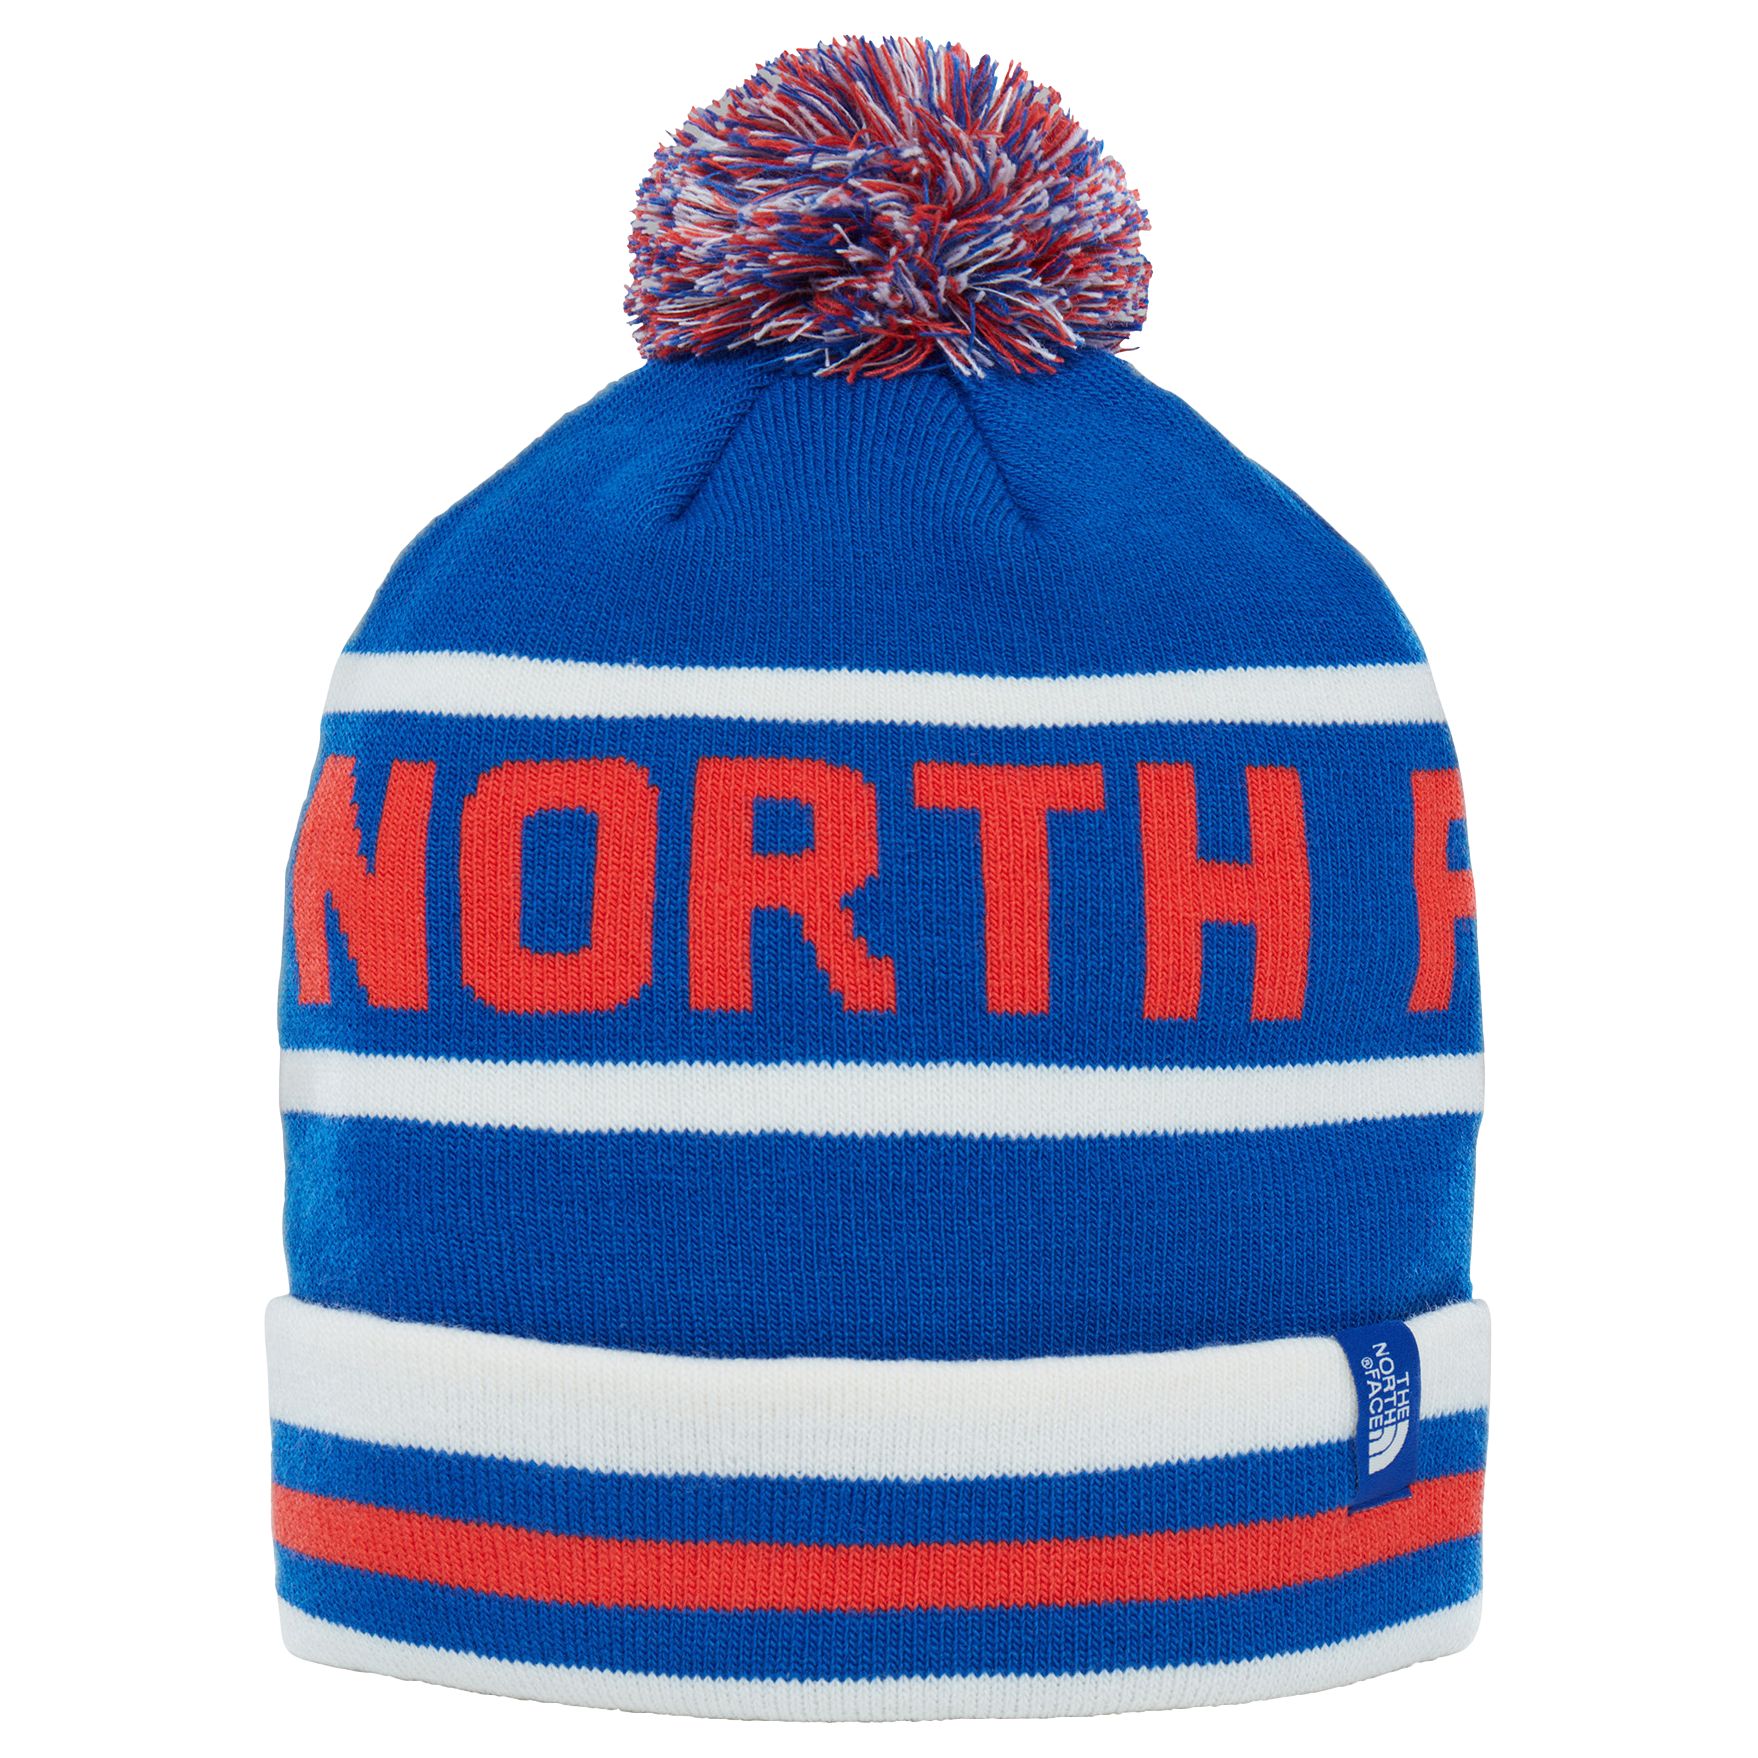 men's bobble hat north face